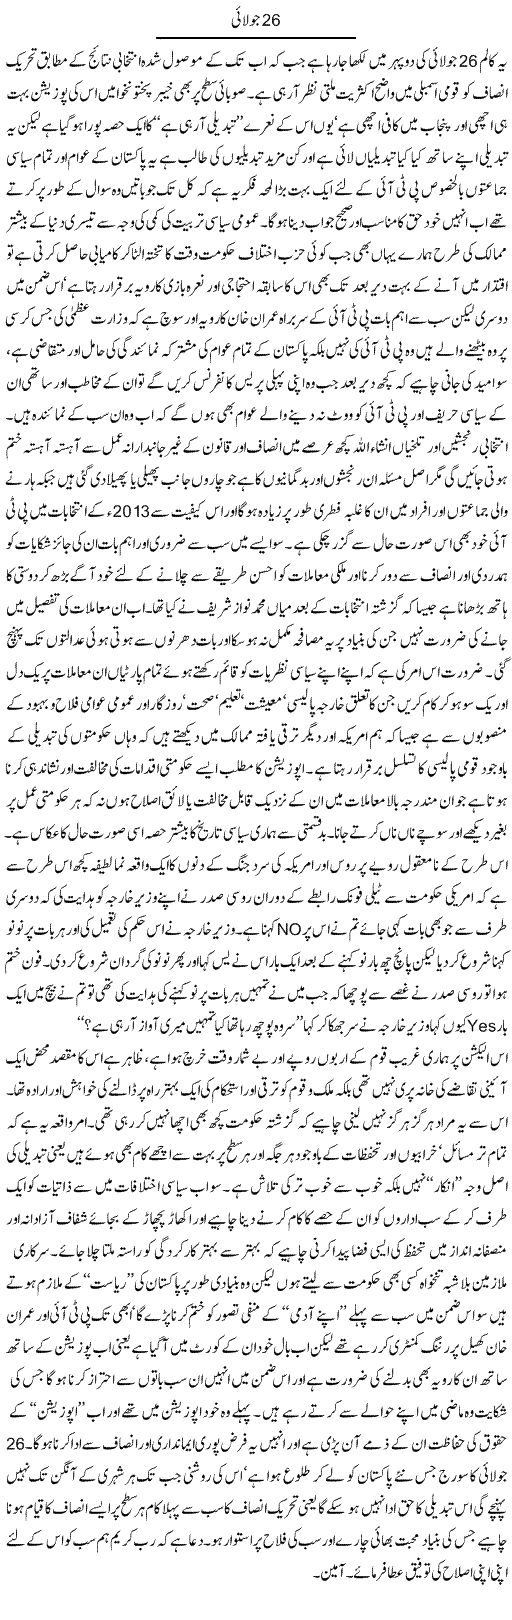 26 July | Amjad Islam Amjad | Daily Urdu Columns